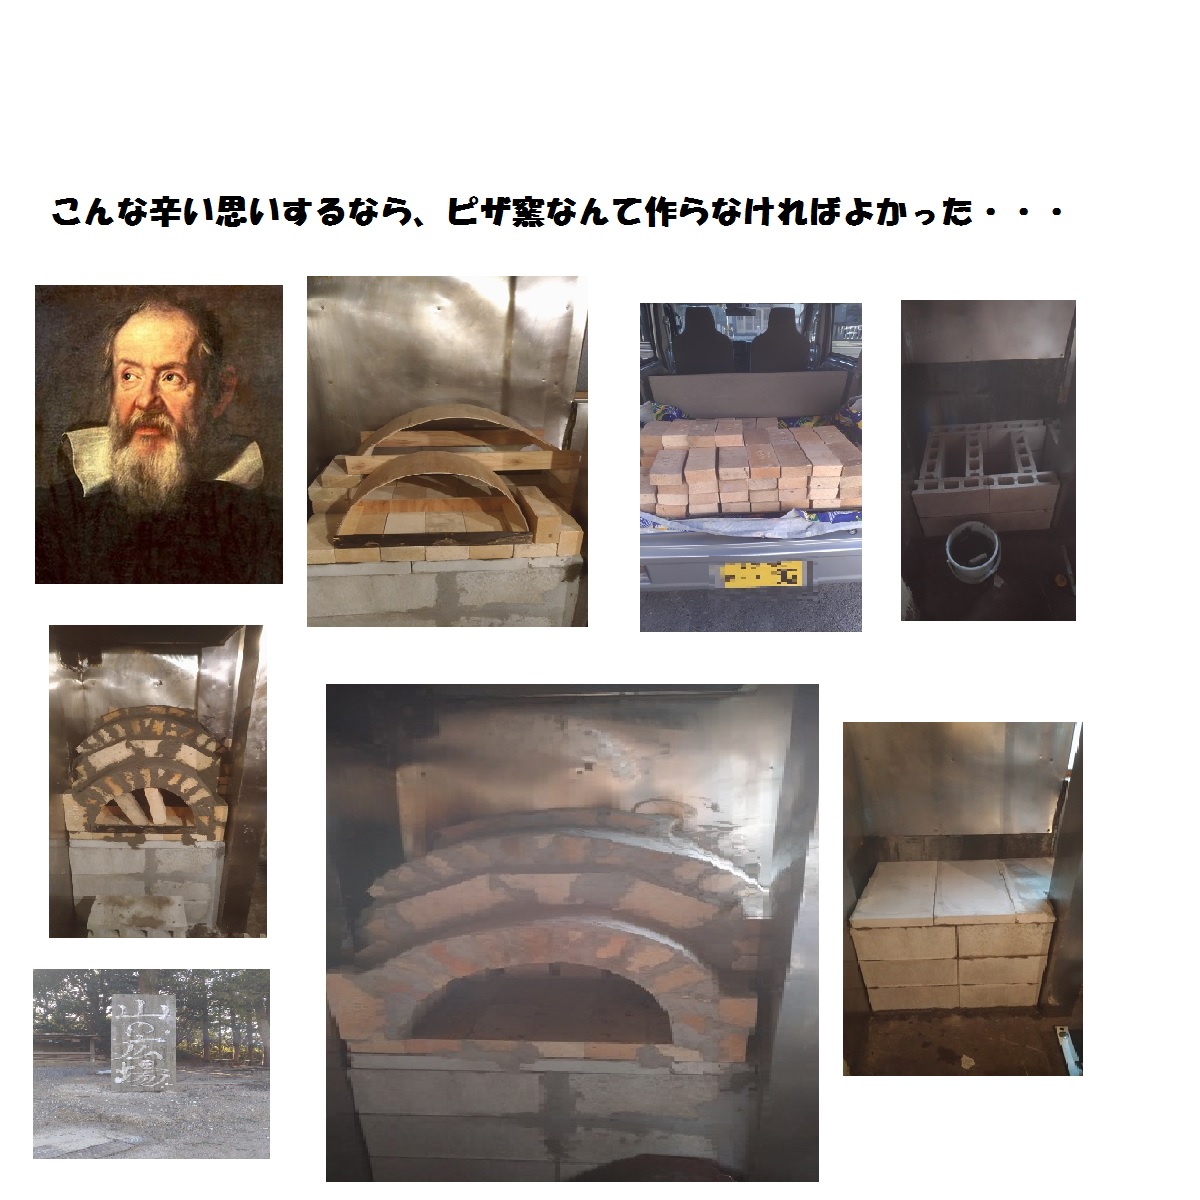 名古屋市内で煙が出ないでピザ窯作成してみました